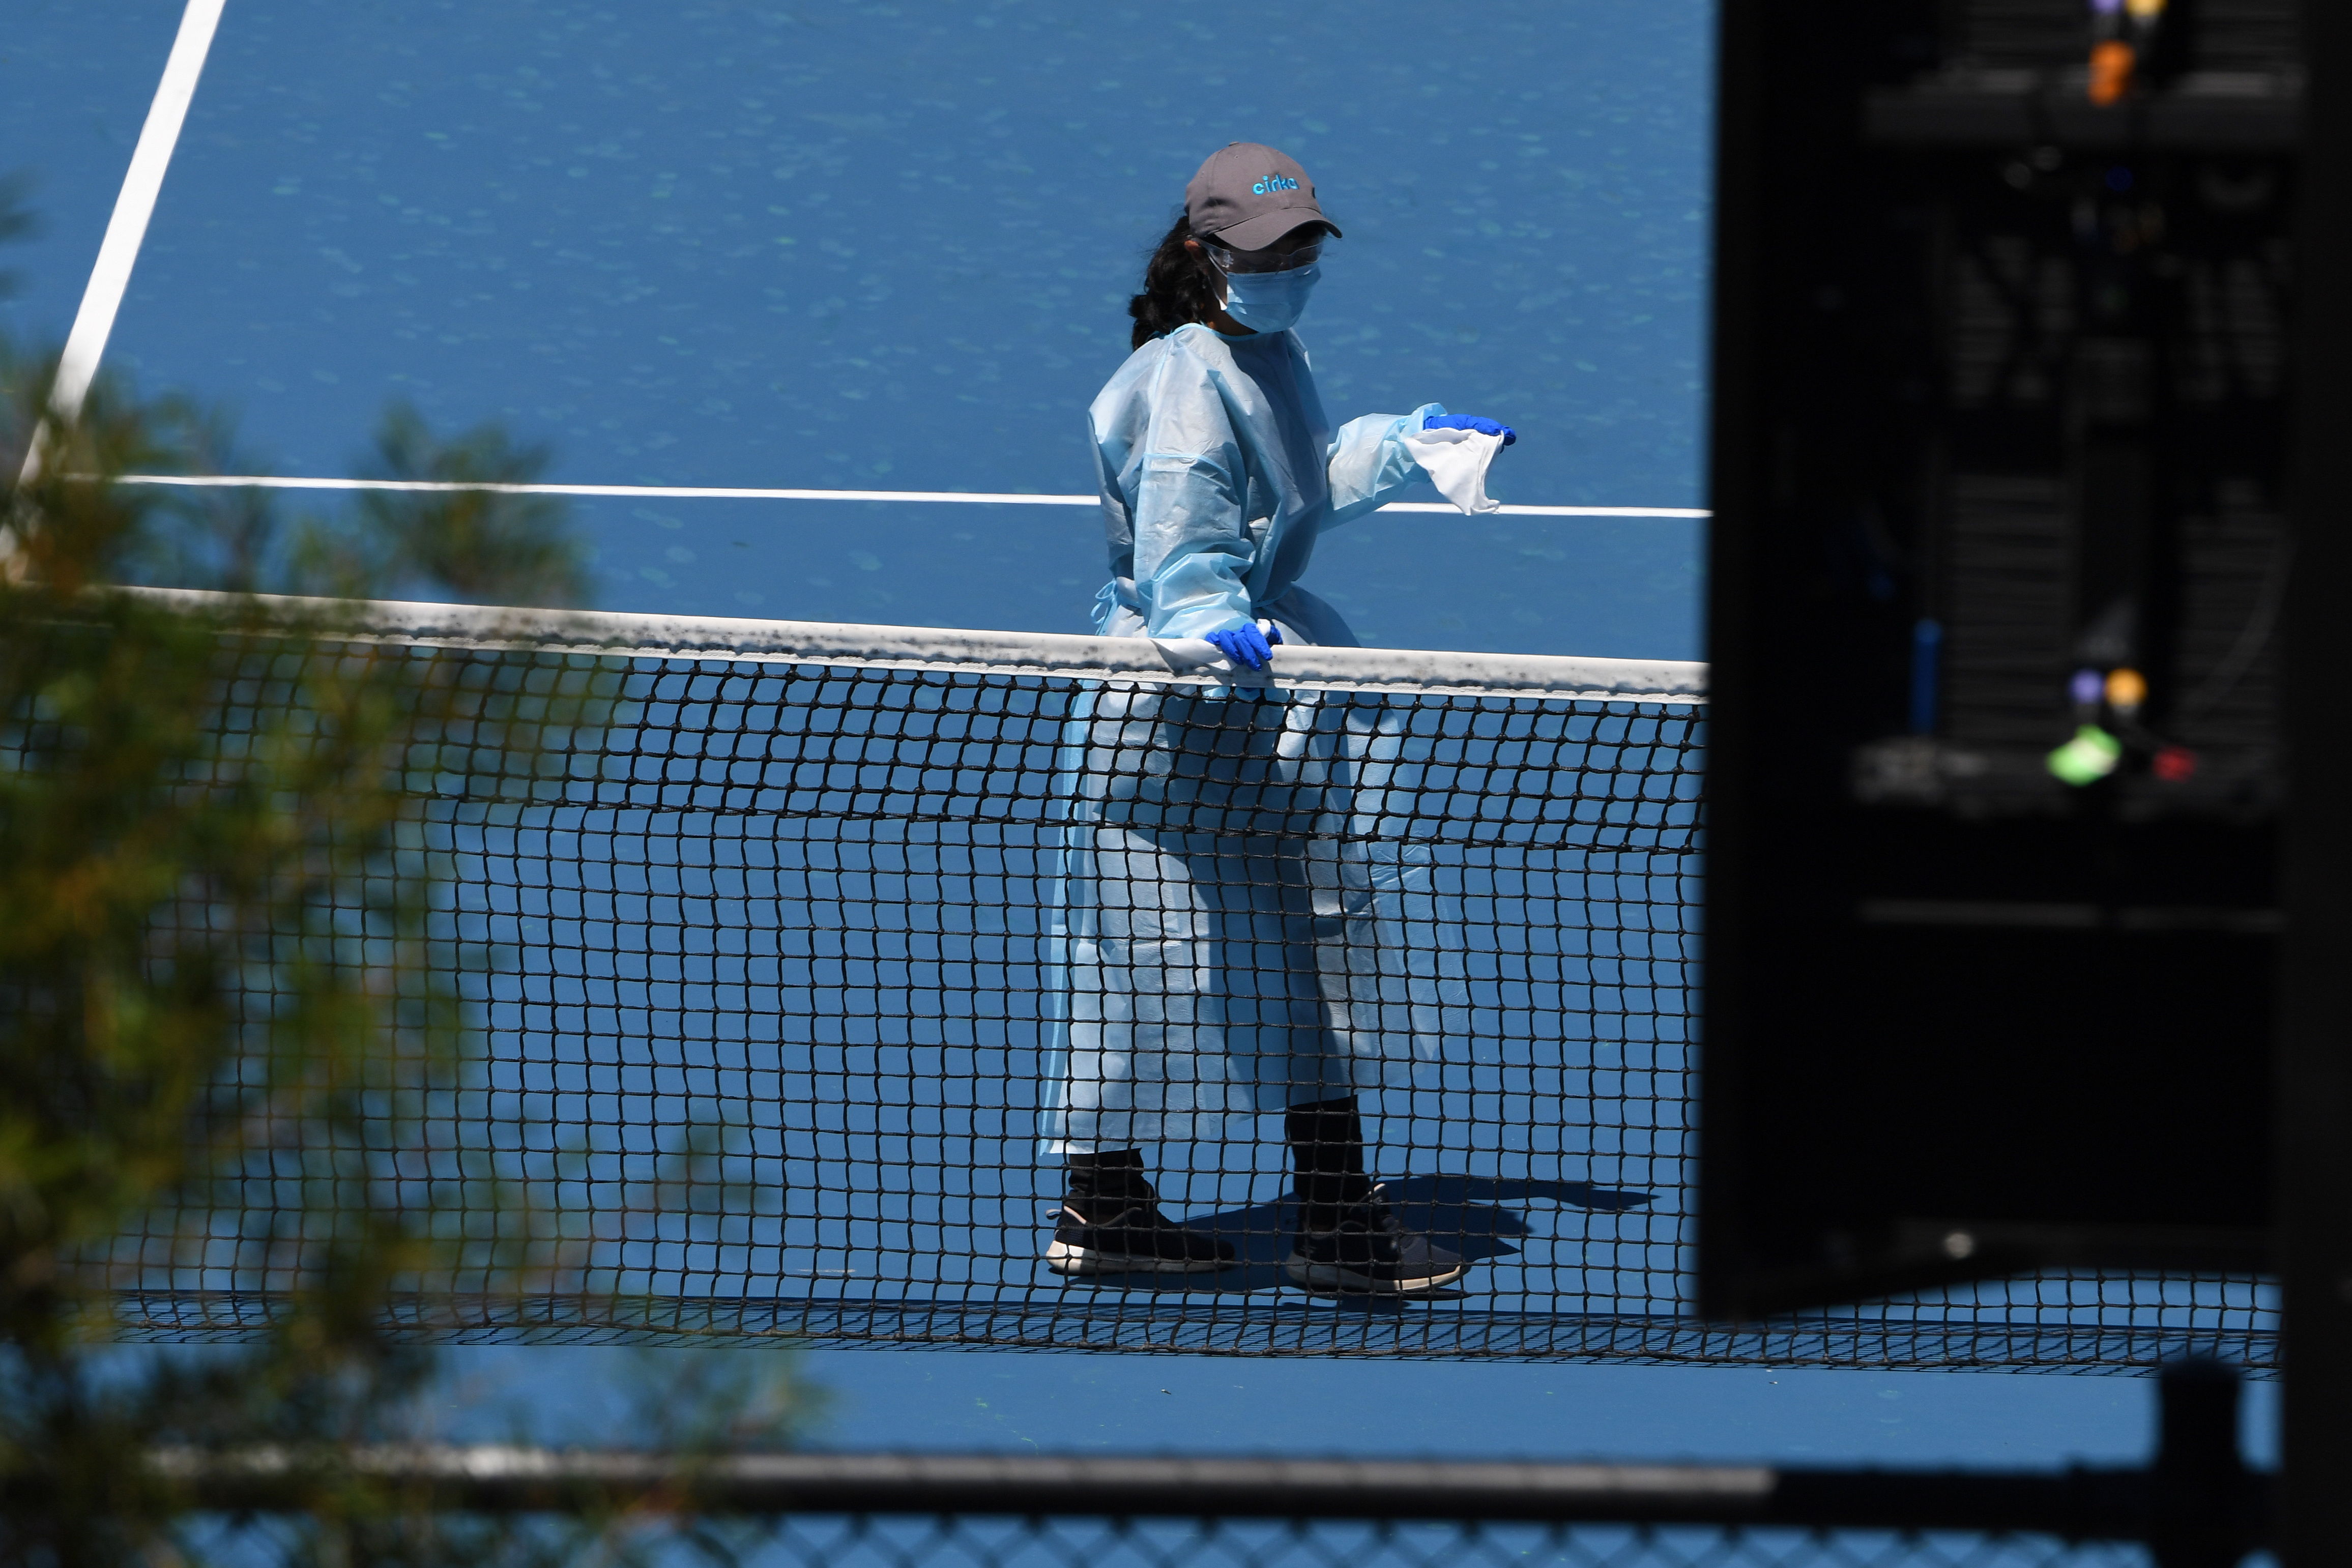 El Abierto de Australia corre peligro de no celebrarse, pues cada vez suman más casos positivos entre tenistas y personal. (Foto Prensa Libre: EFE)